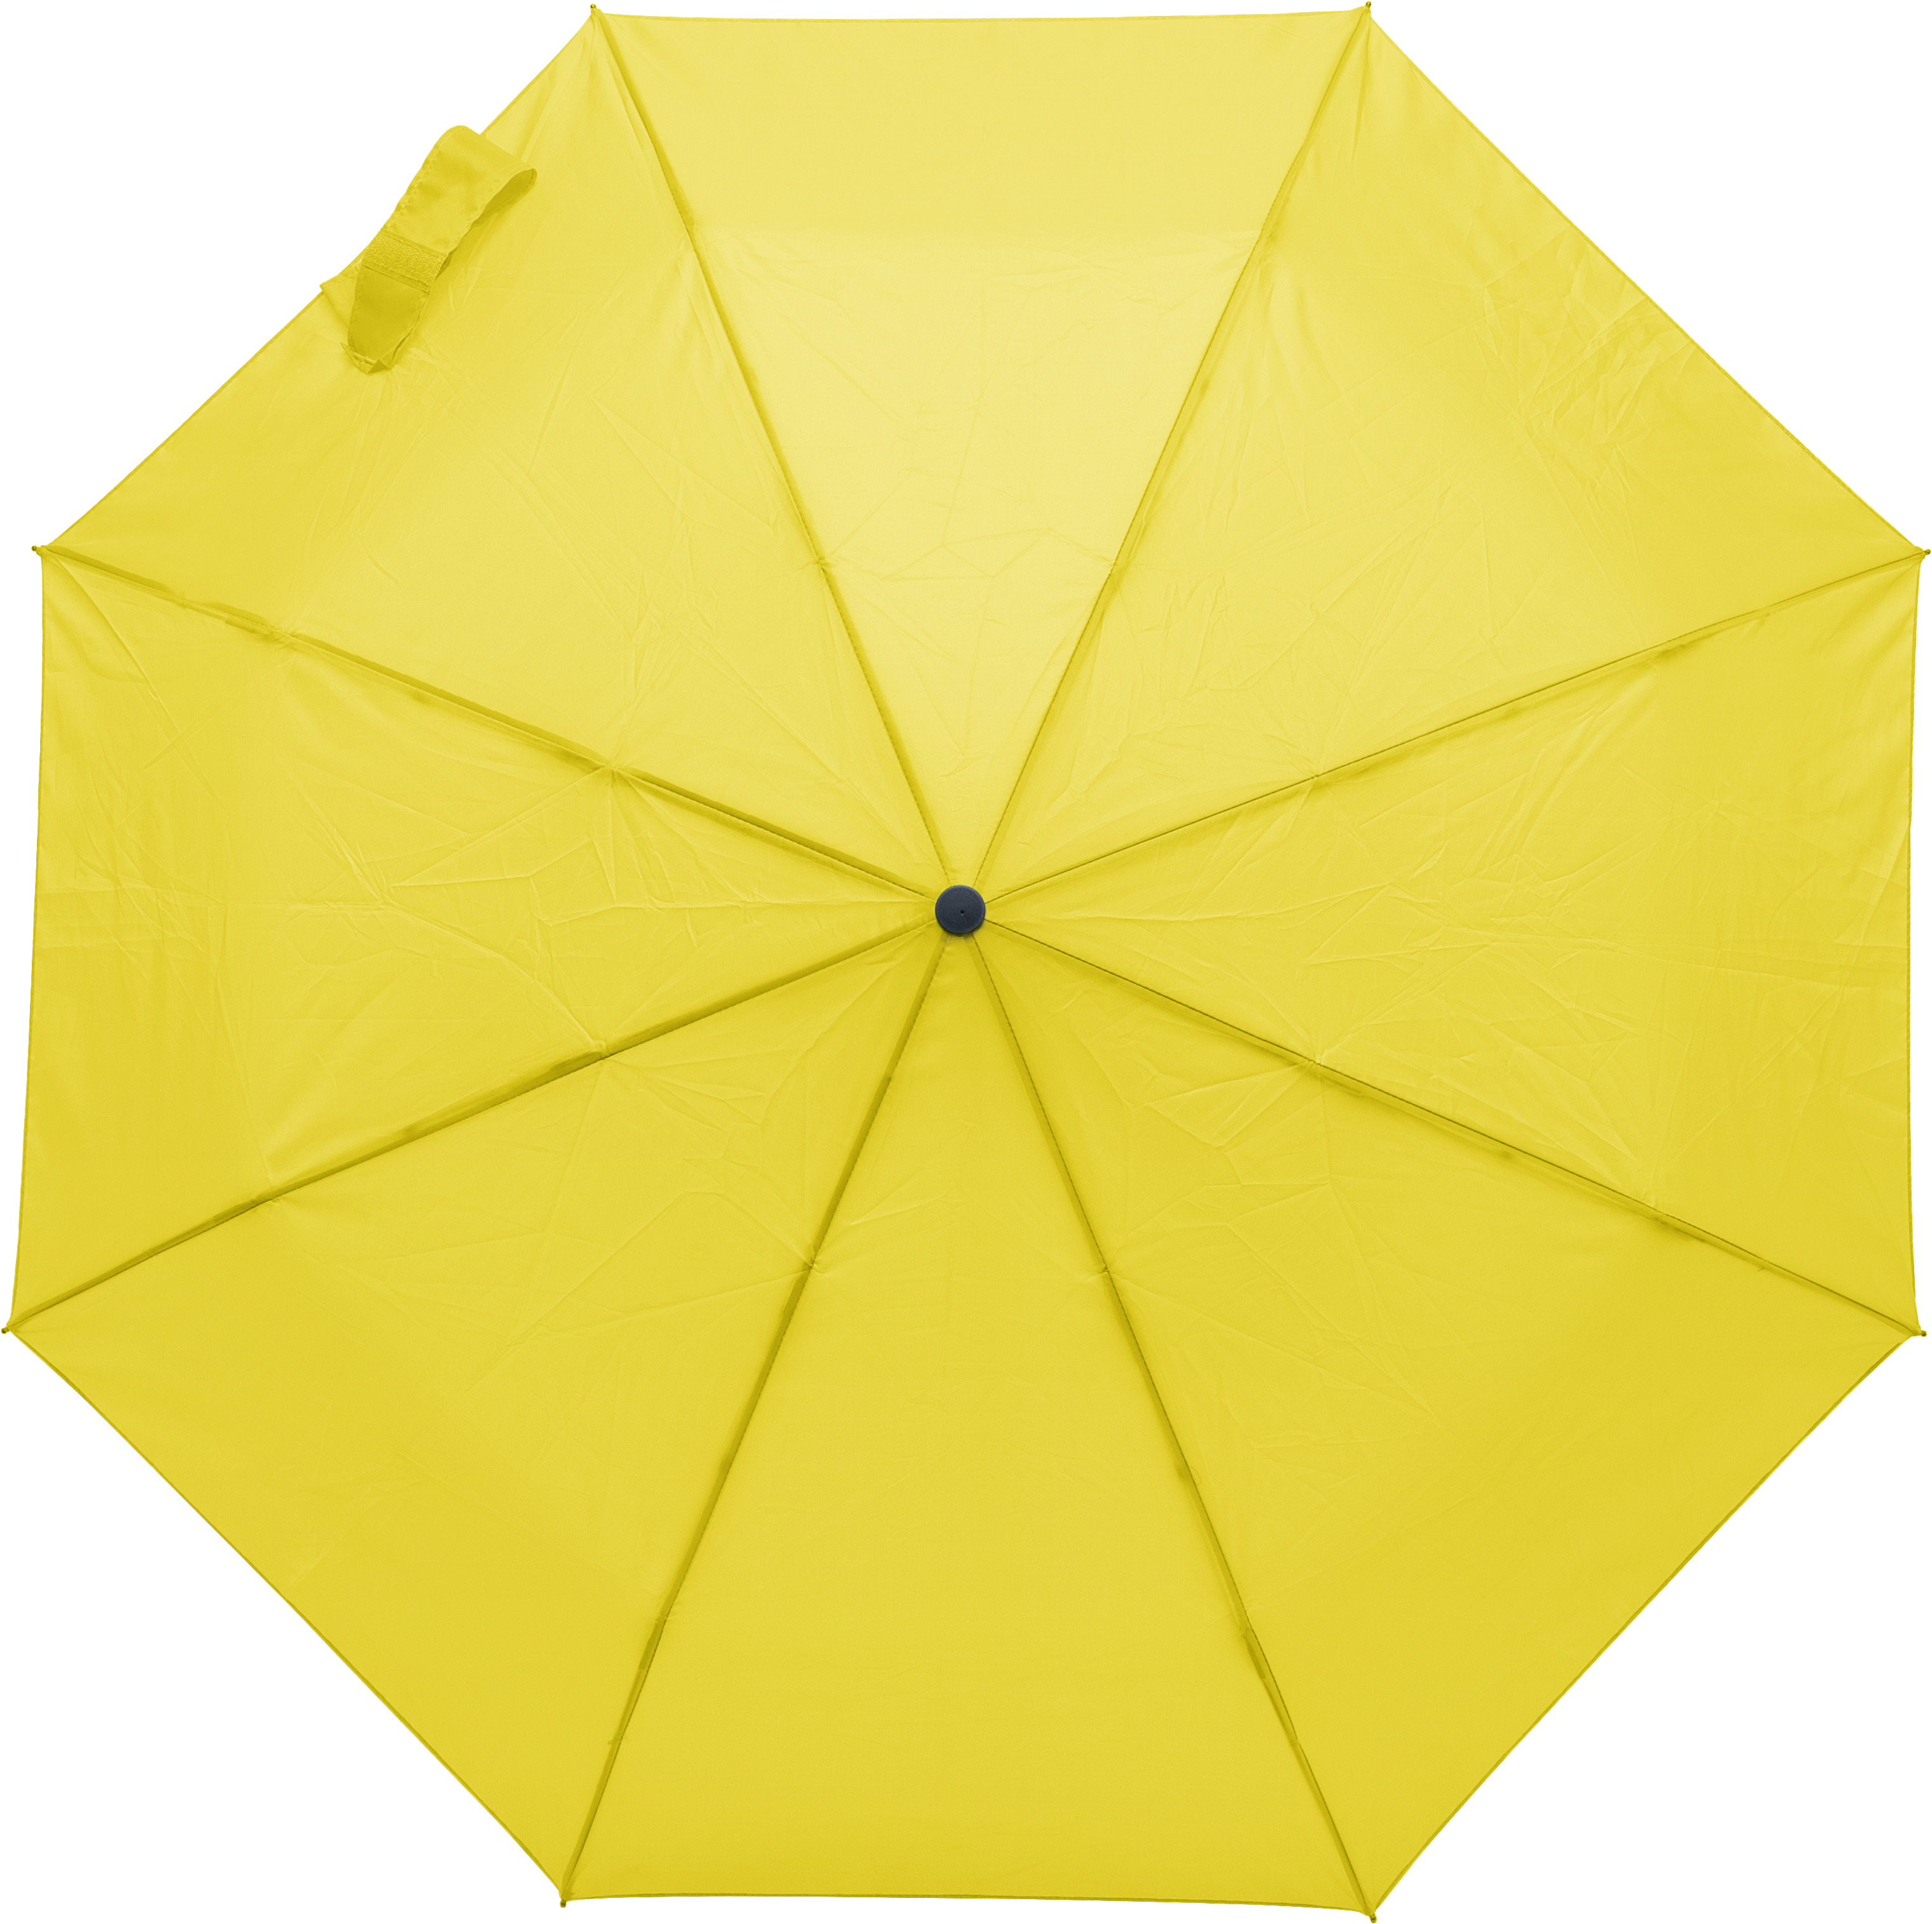 009255 006999999 2d090 top pro01 fal - Foldable umbrella